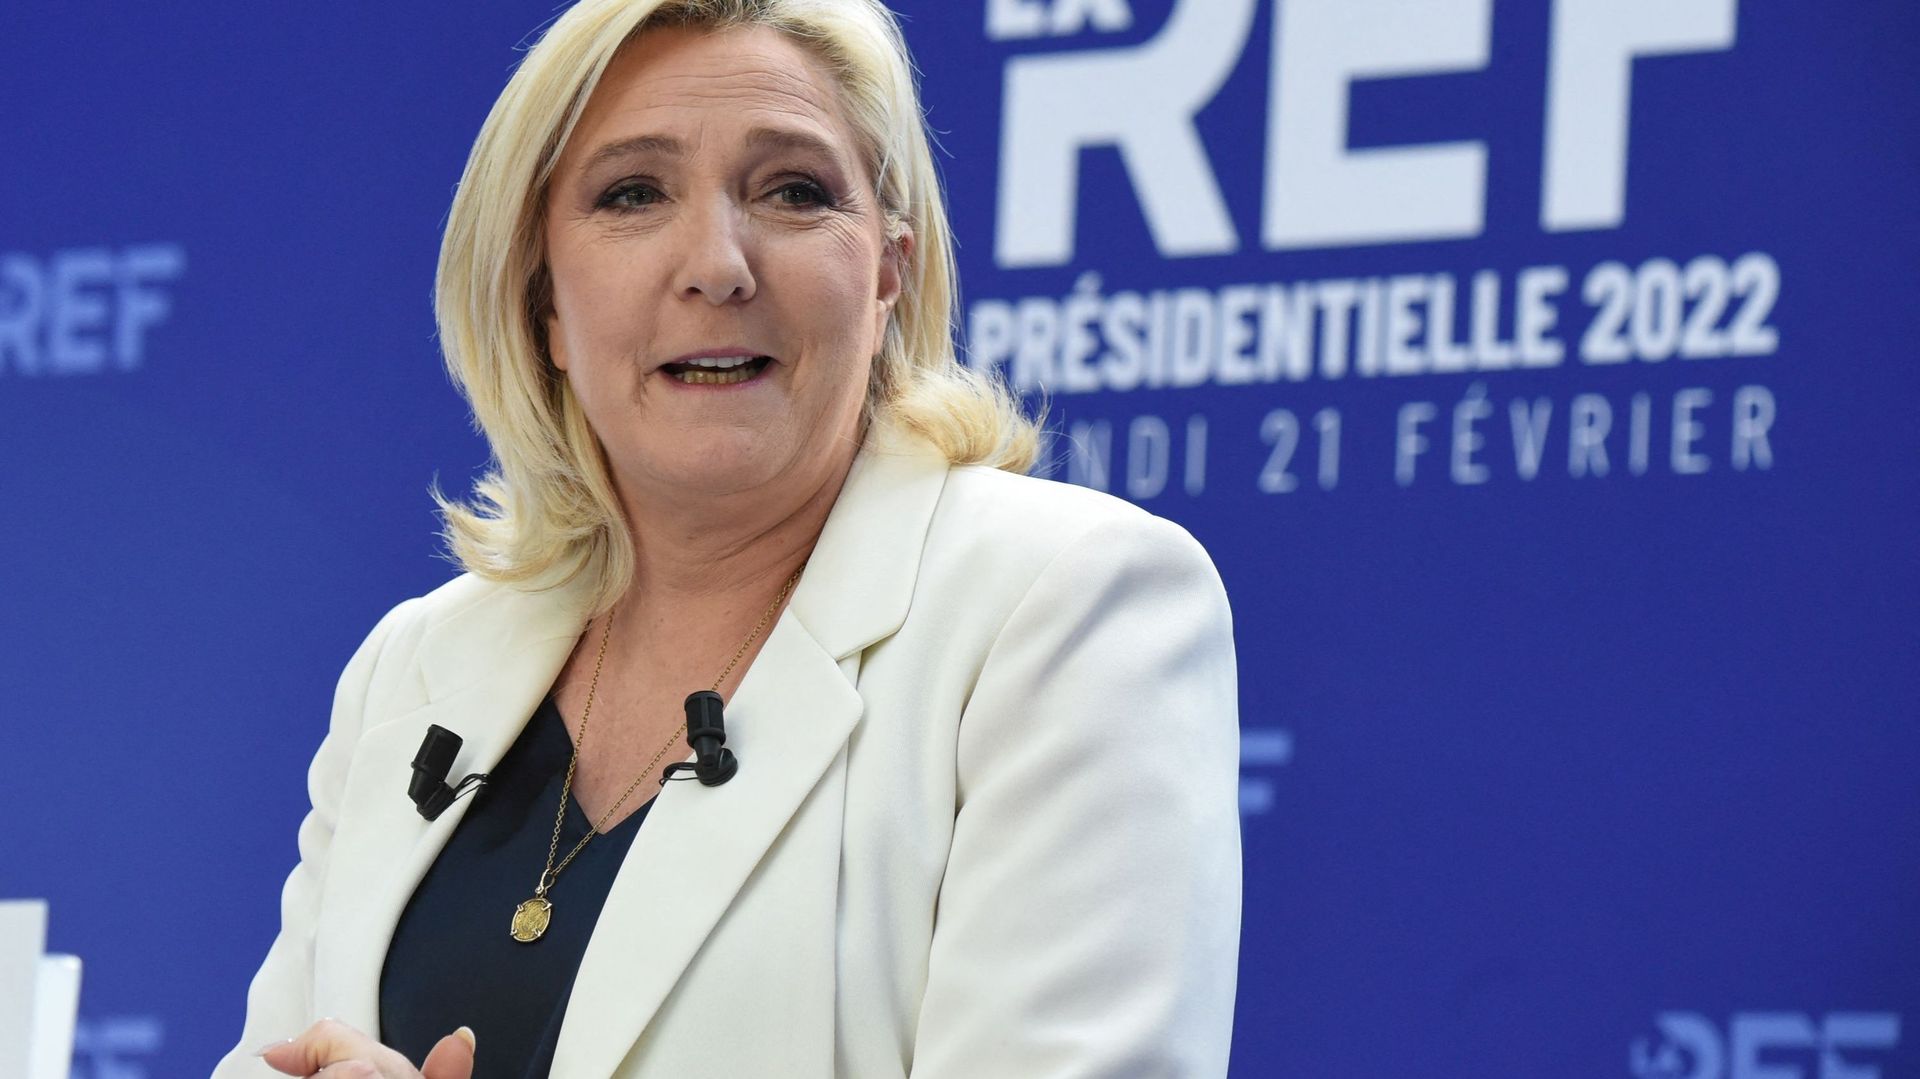 Marine Le Pen prononçant un discours lors de la présentation de son programme de campagne économique devant le Medef à Paris, le 21 février 2022.